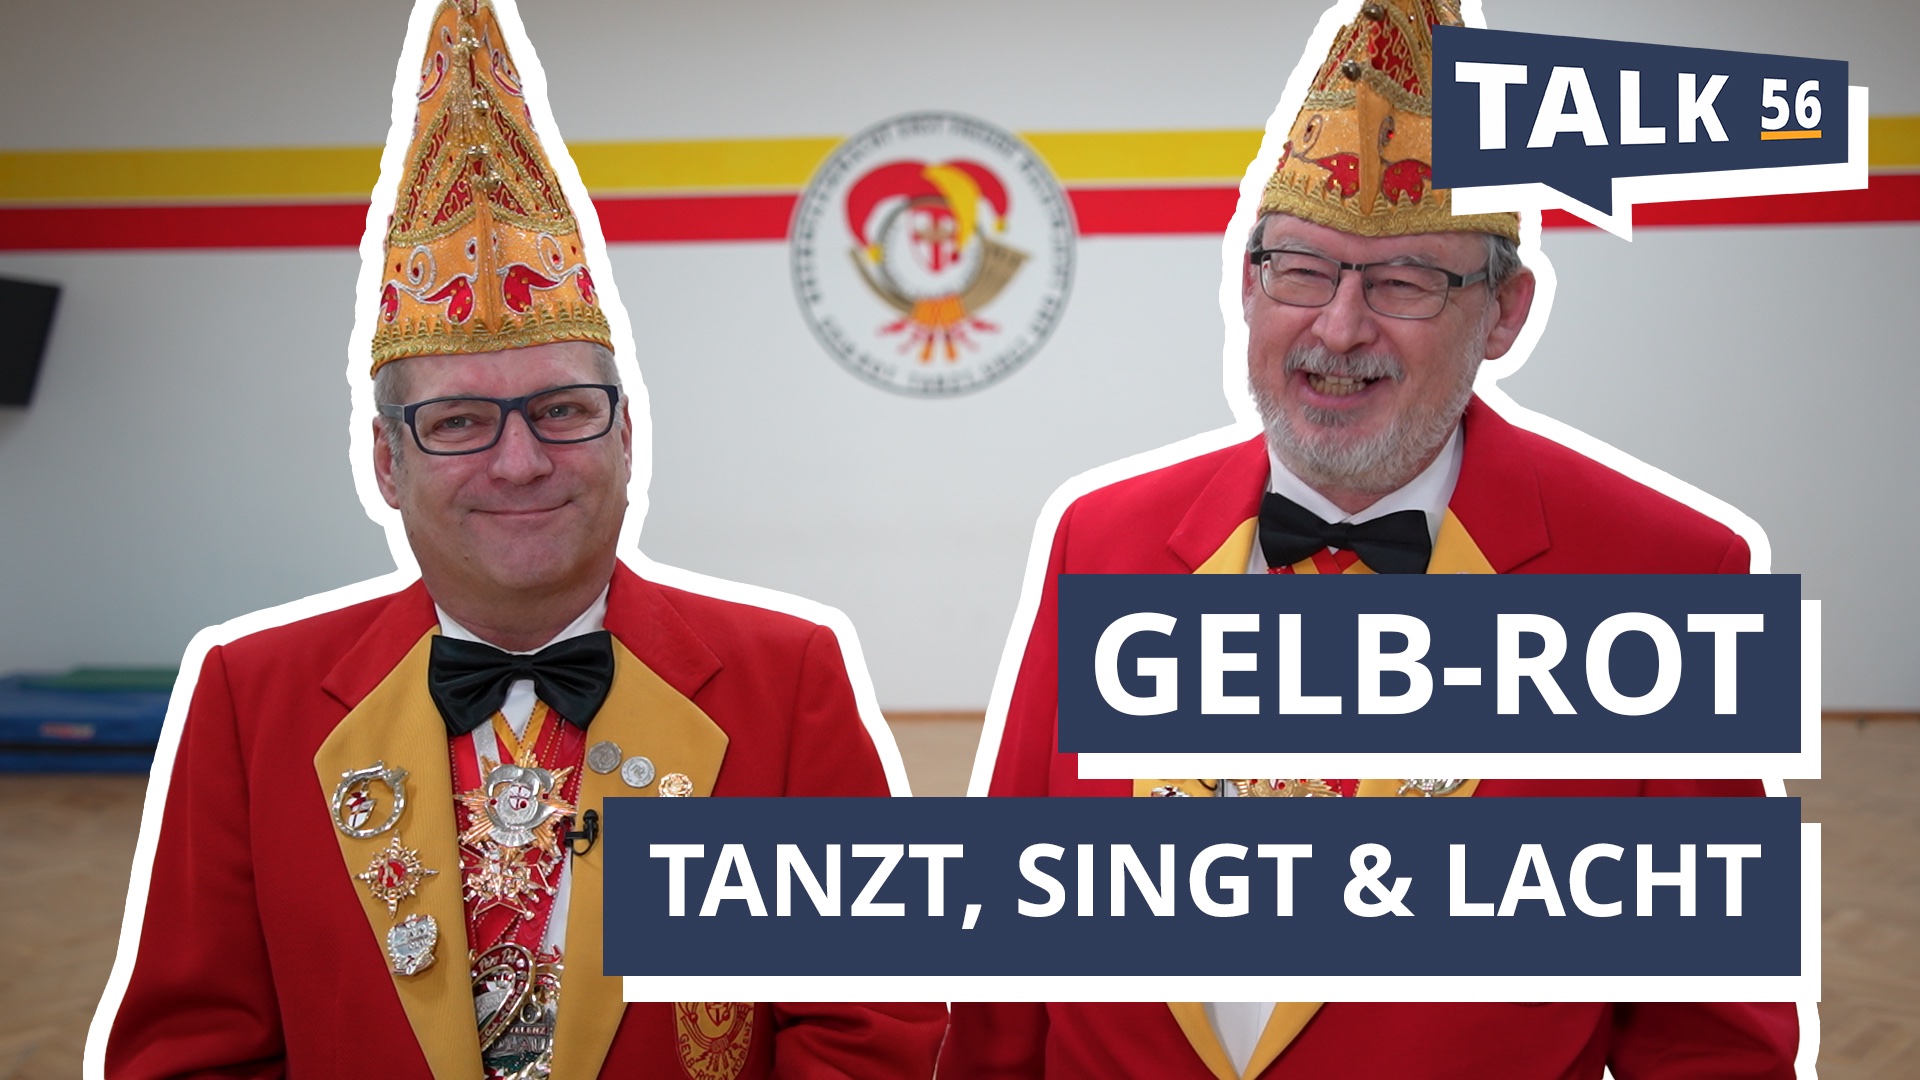 Gelb-Rot tanzt, singt & lacht: Narrenzunft ruft Pflichtveranstaltung für alle Karnevalisten aus